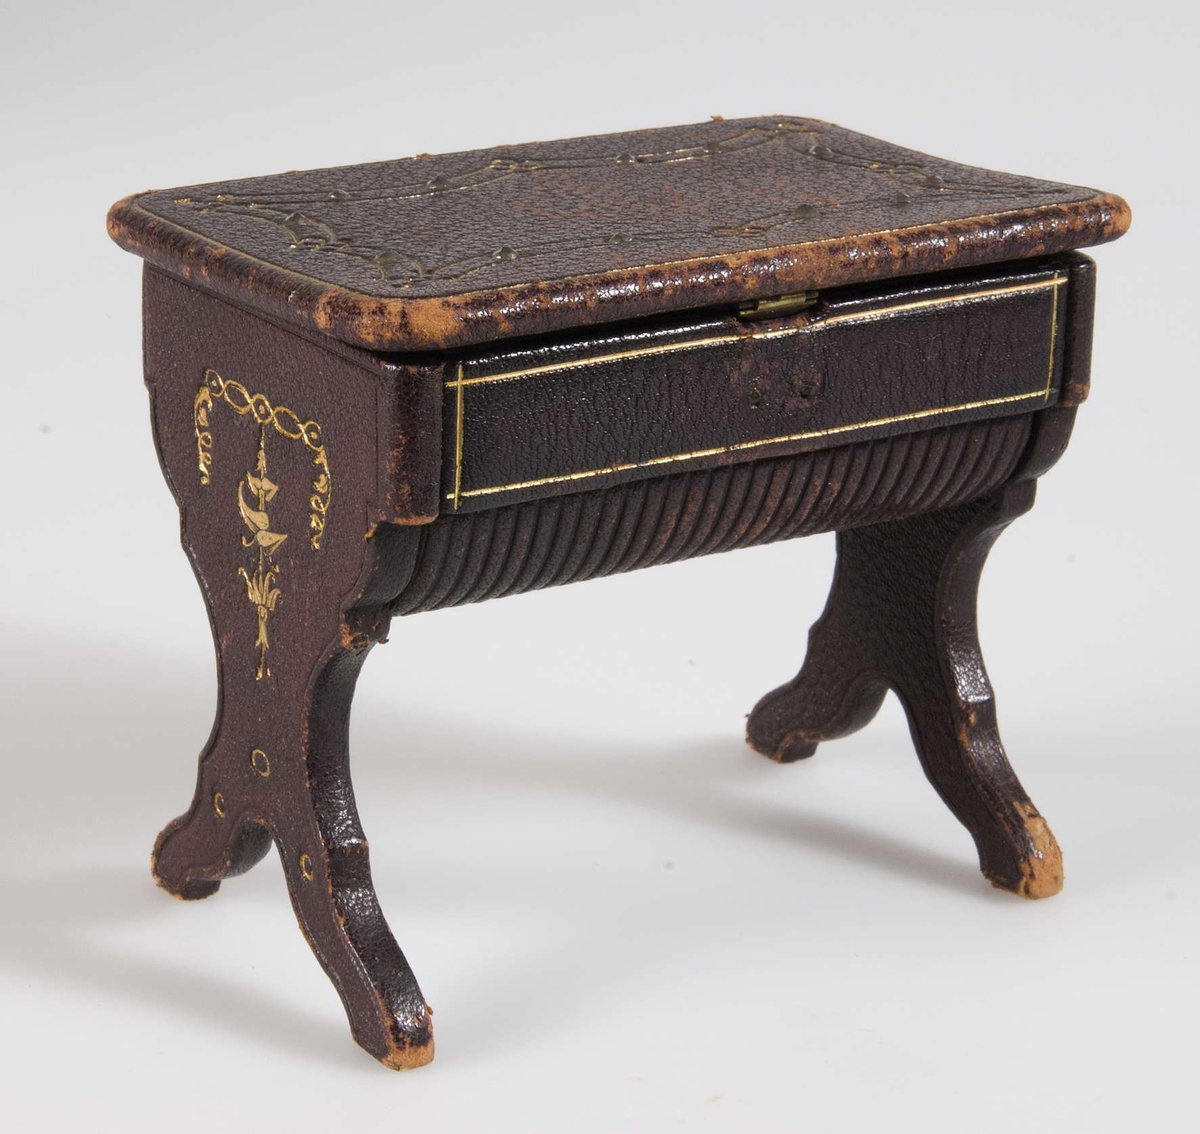 Litet sybord för dockskåp i brunt läder med innehåll: tre trådnystan, en fingerborg i metall, en bok med träpärmar, ett fodral i metall samt två vita tygbitar.